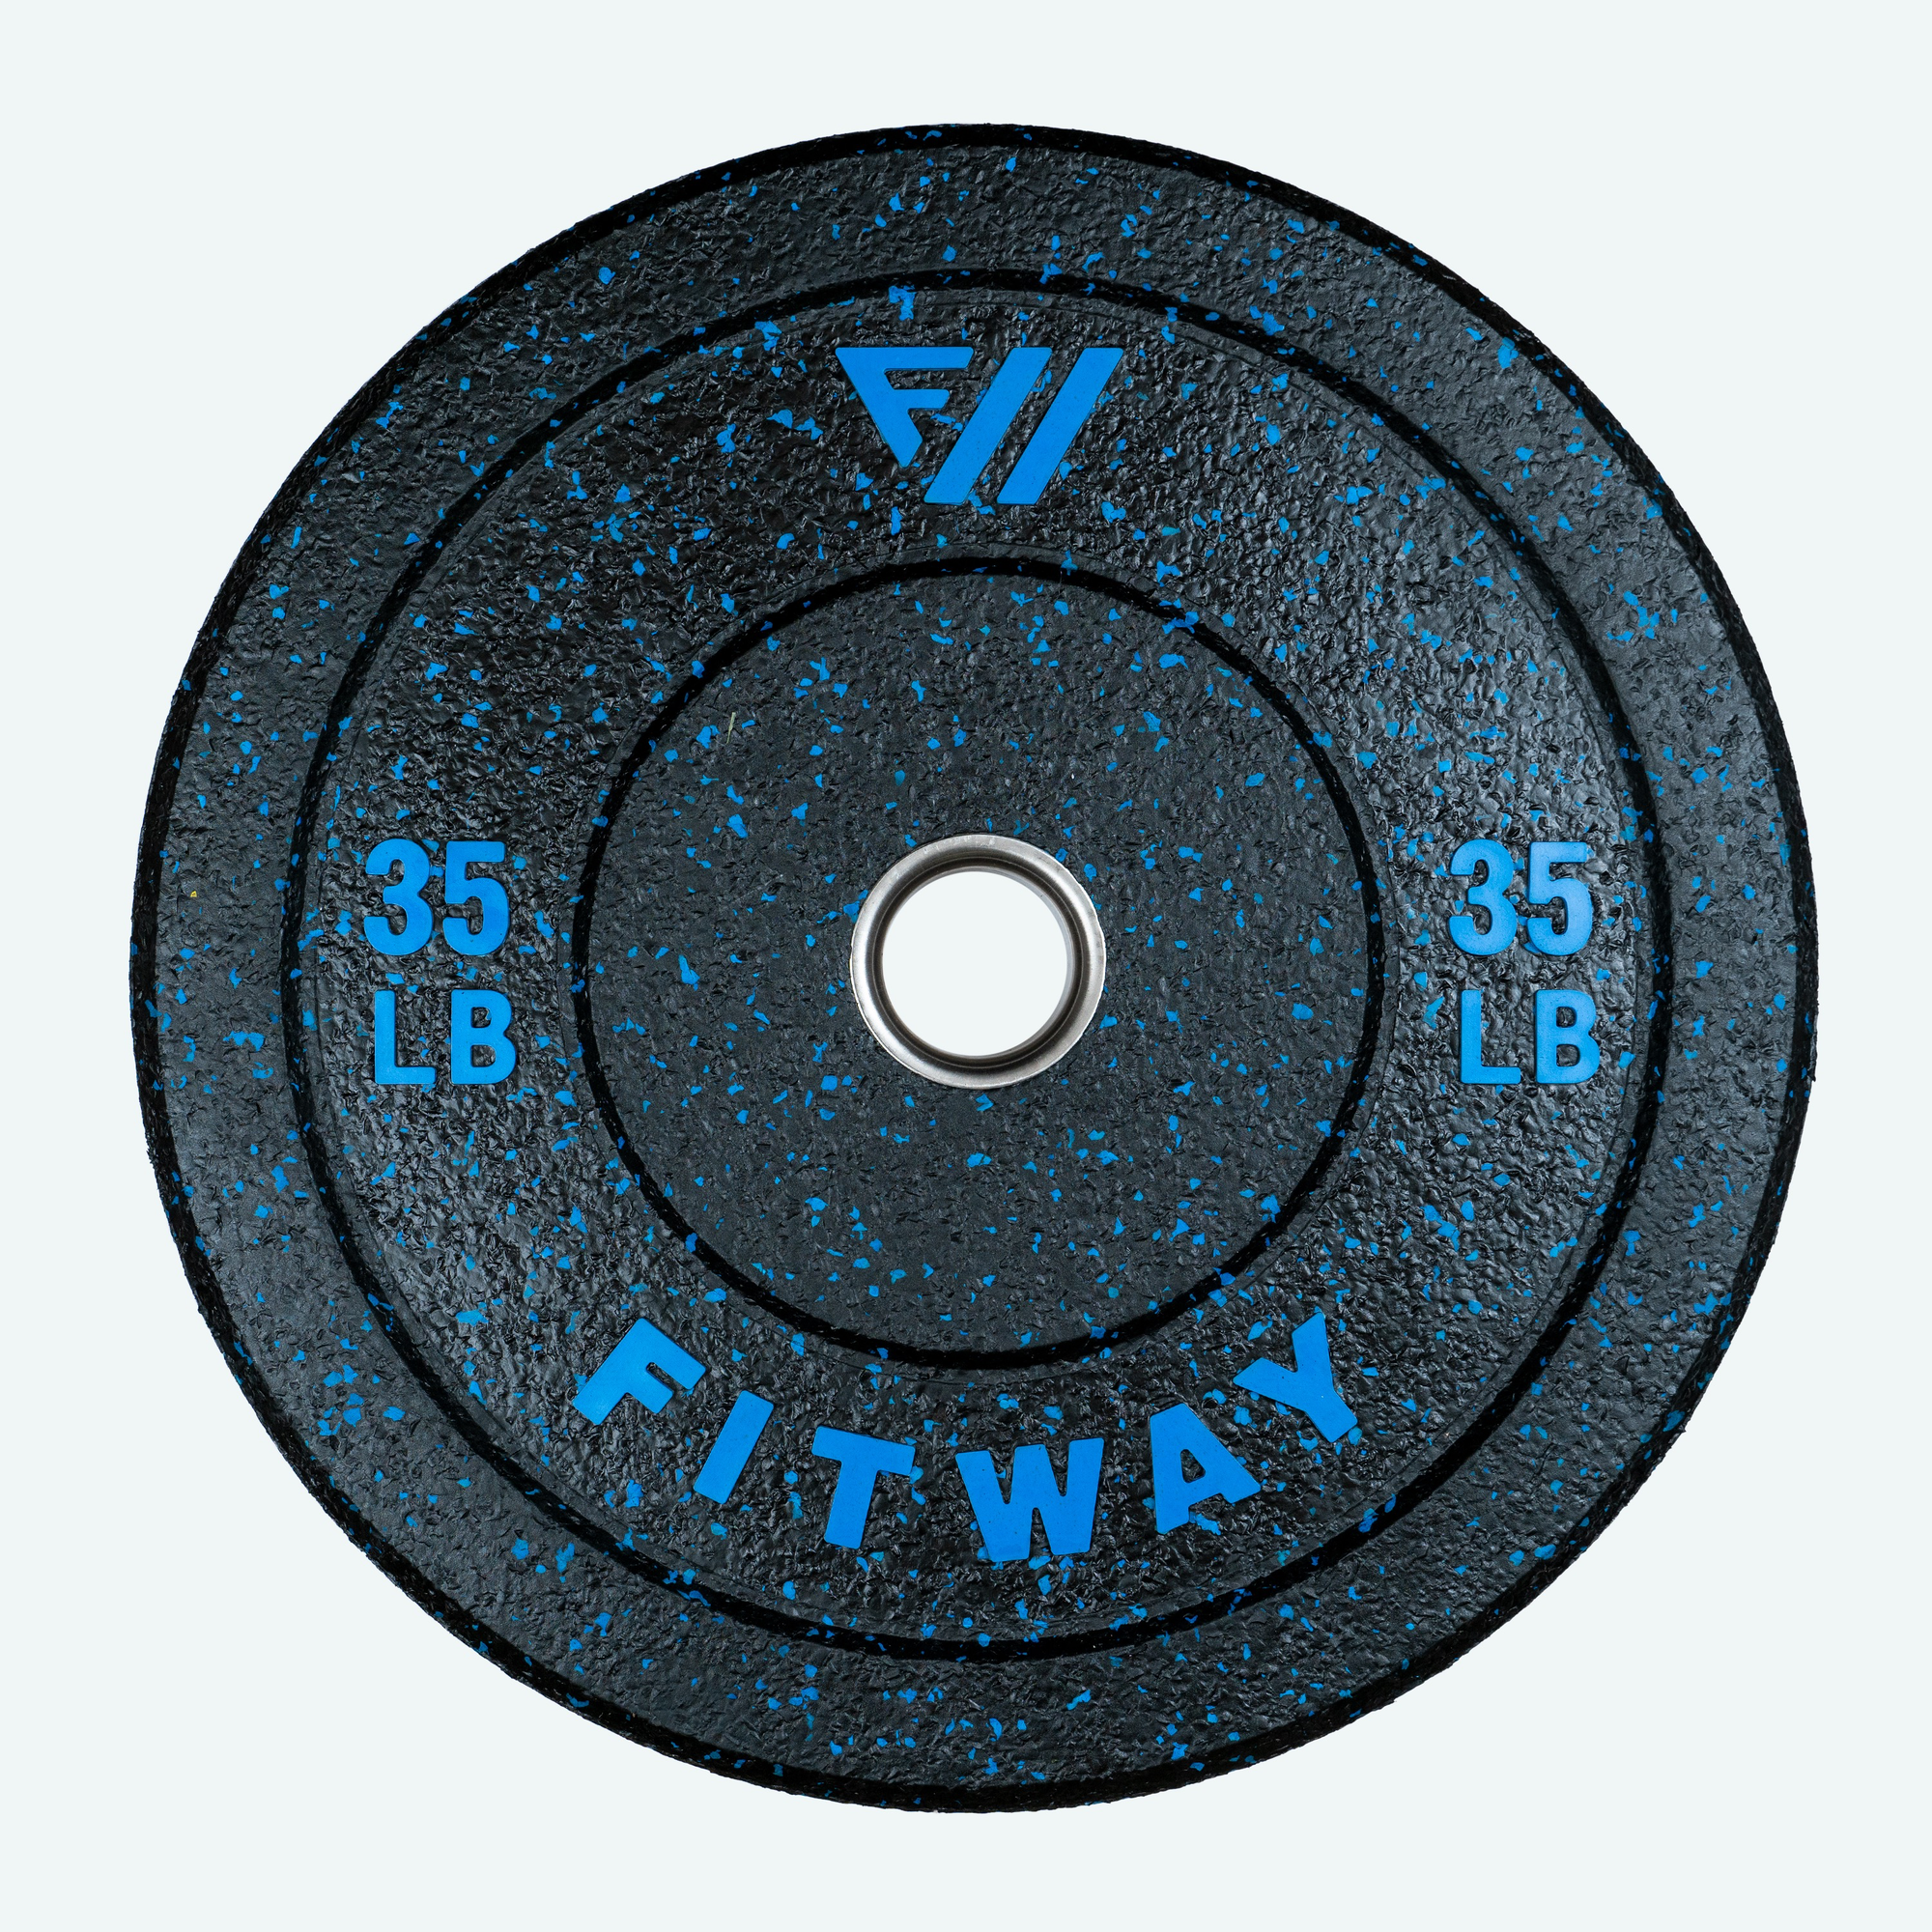 Fitway Hi-Temp Bumper Plate - 35lb